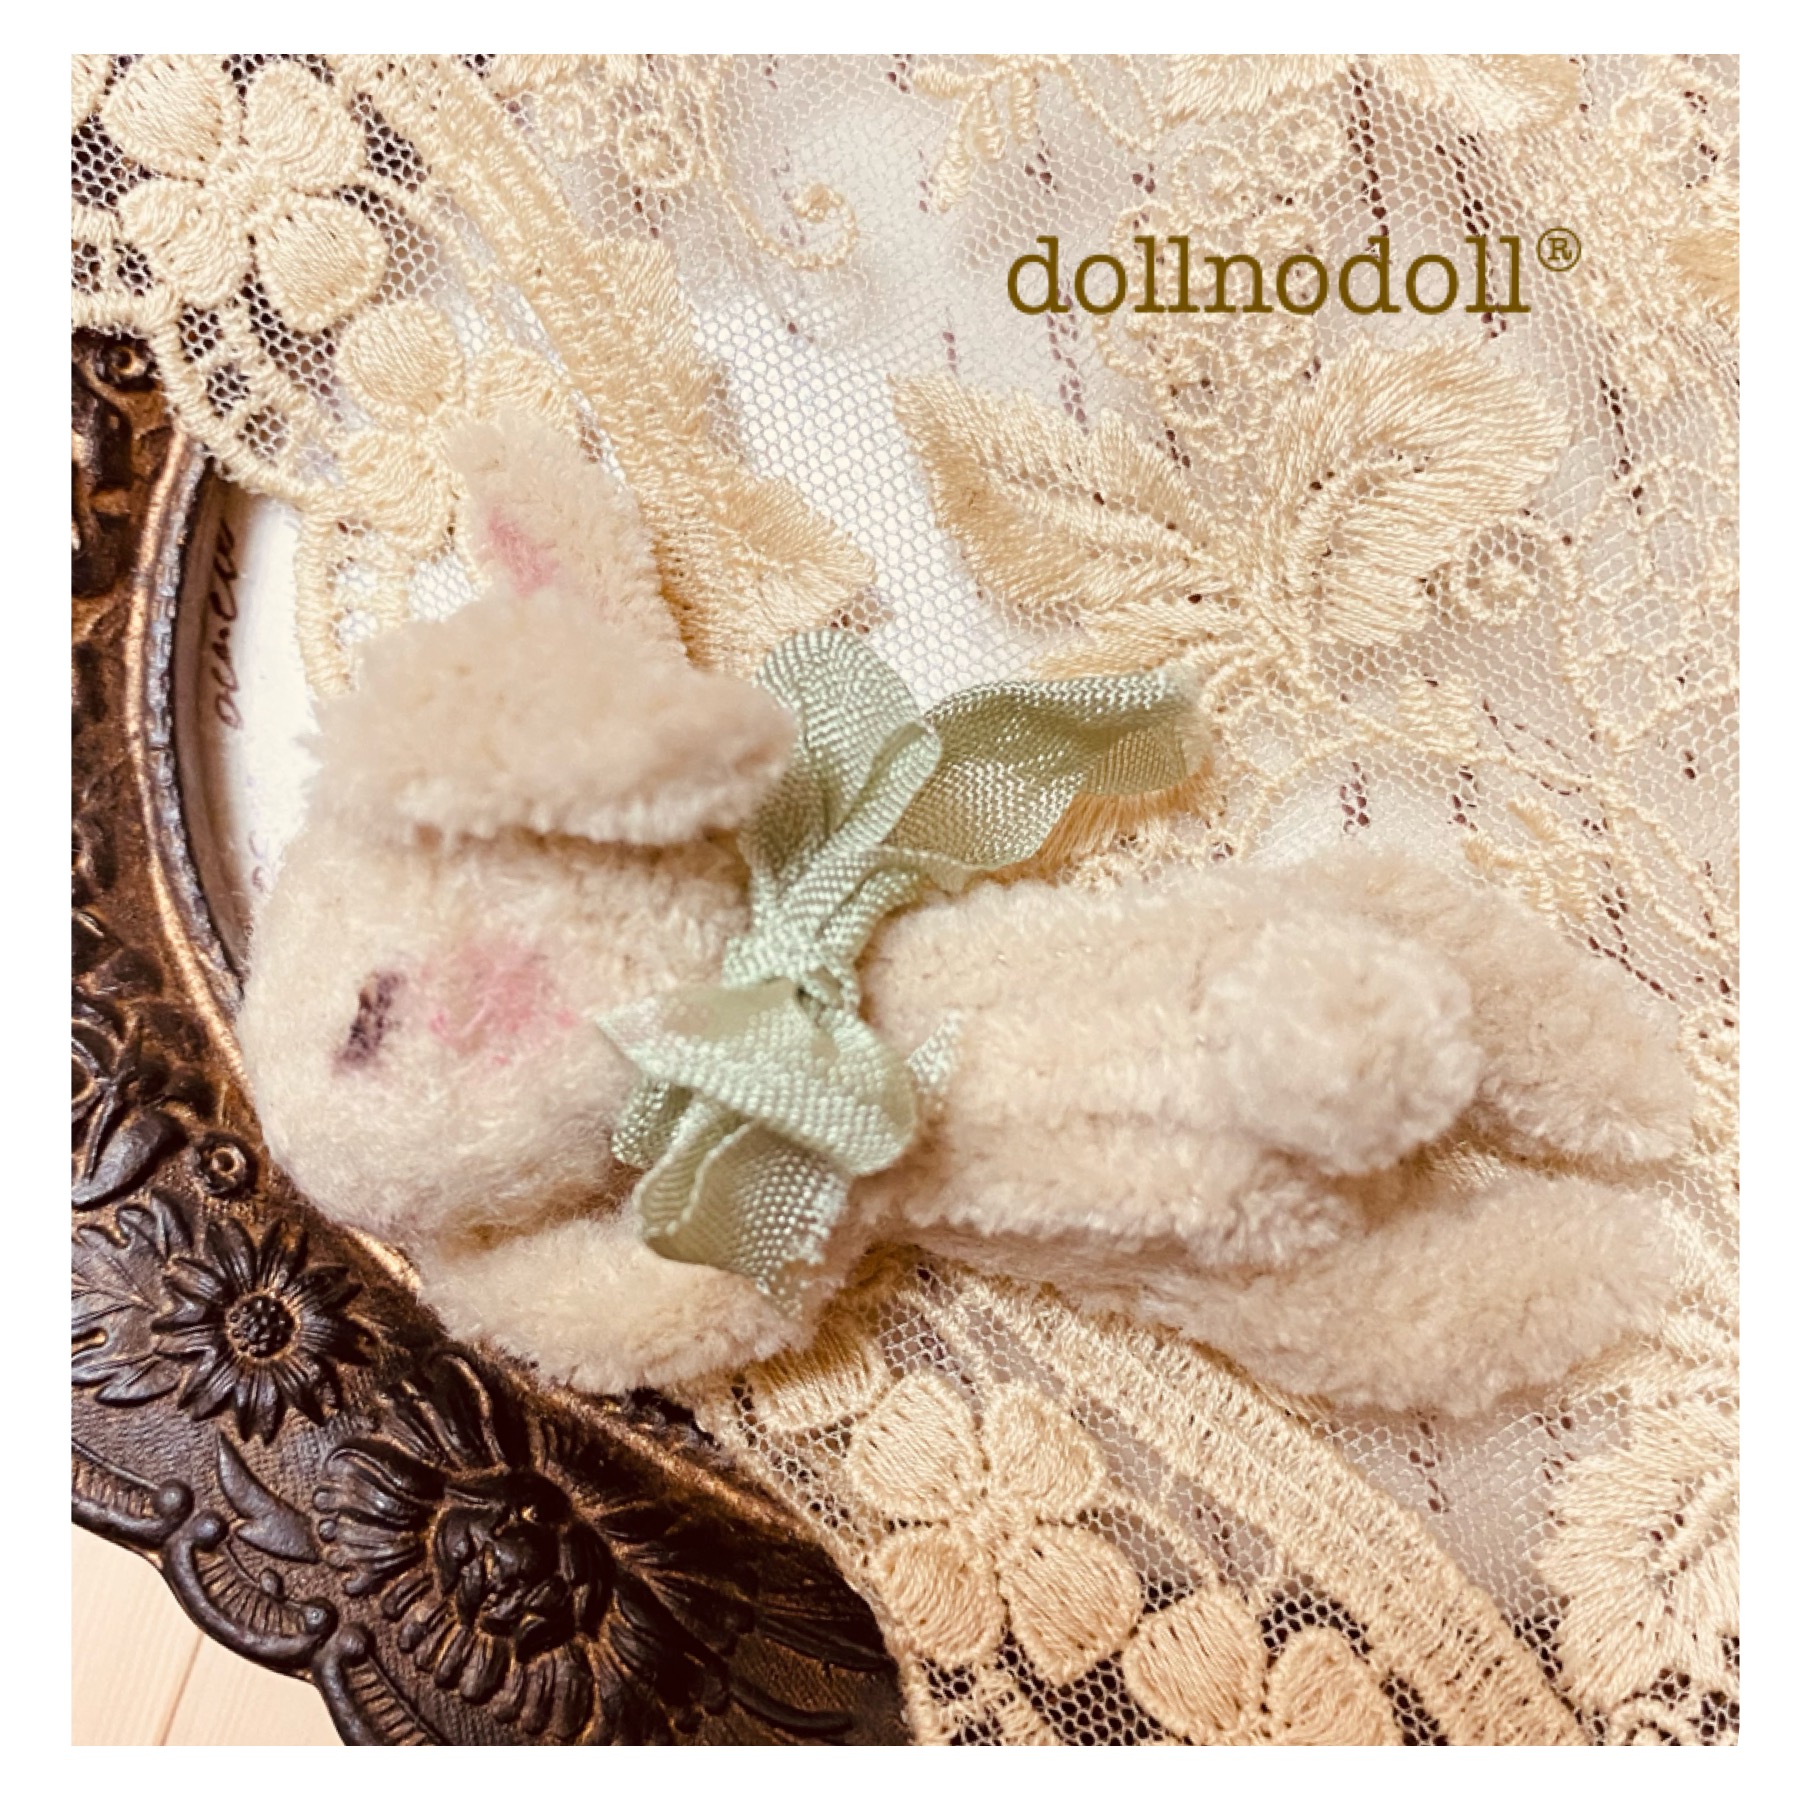 [公式]dollnodoll)®︎ミニチュアテディベア/モールアニマル/モールアート講座/ドール・ドール